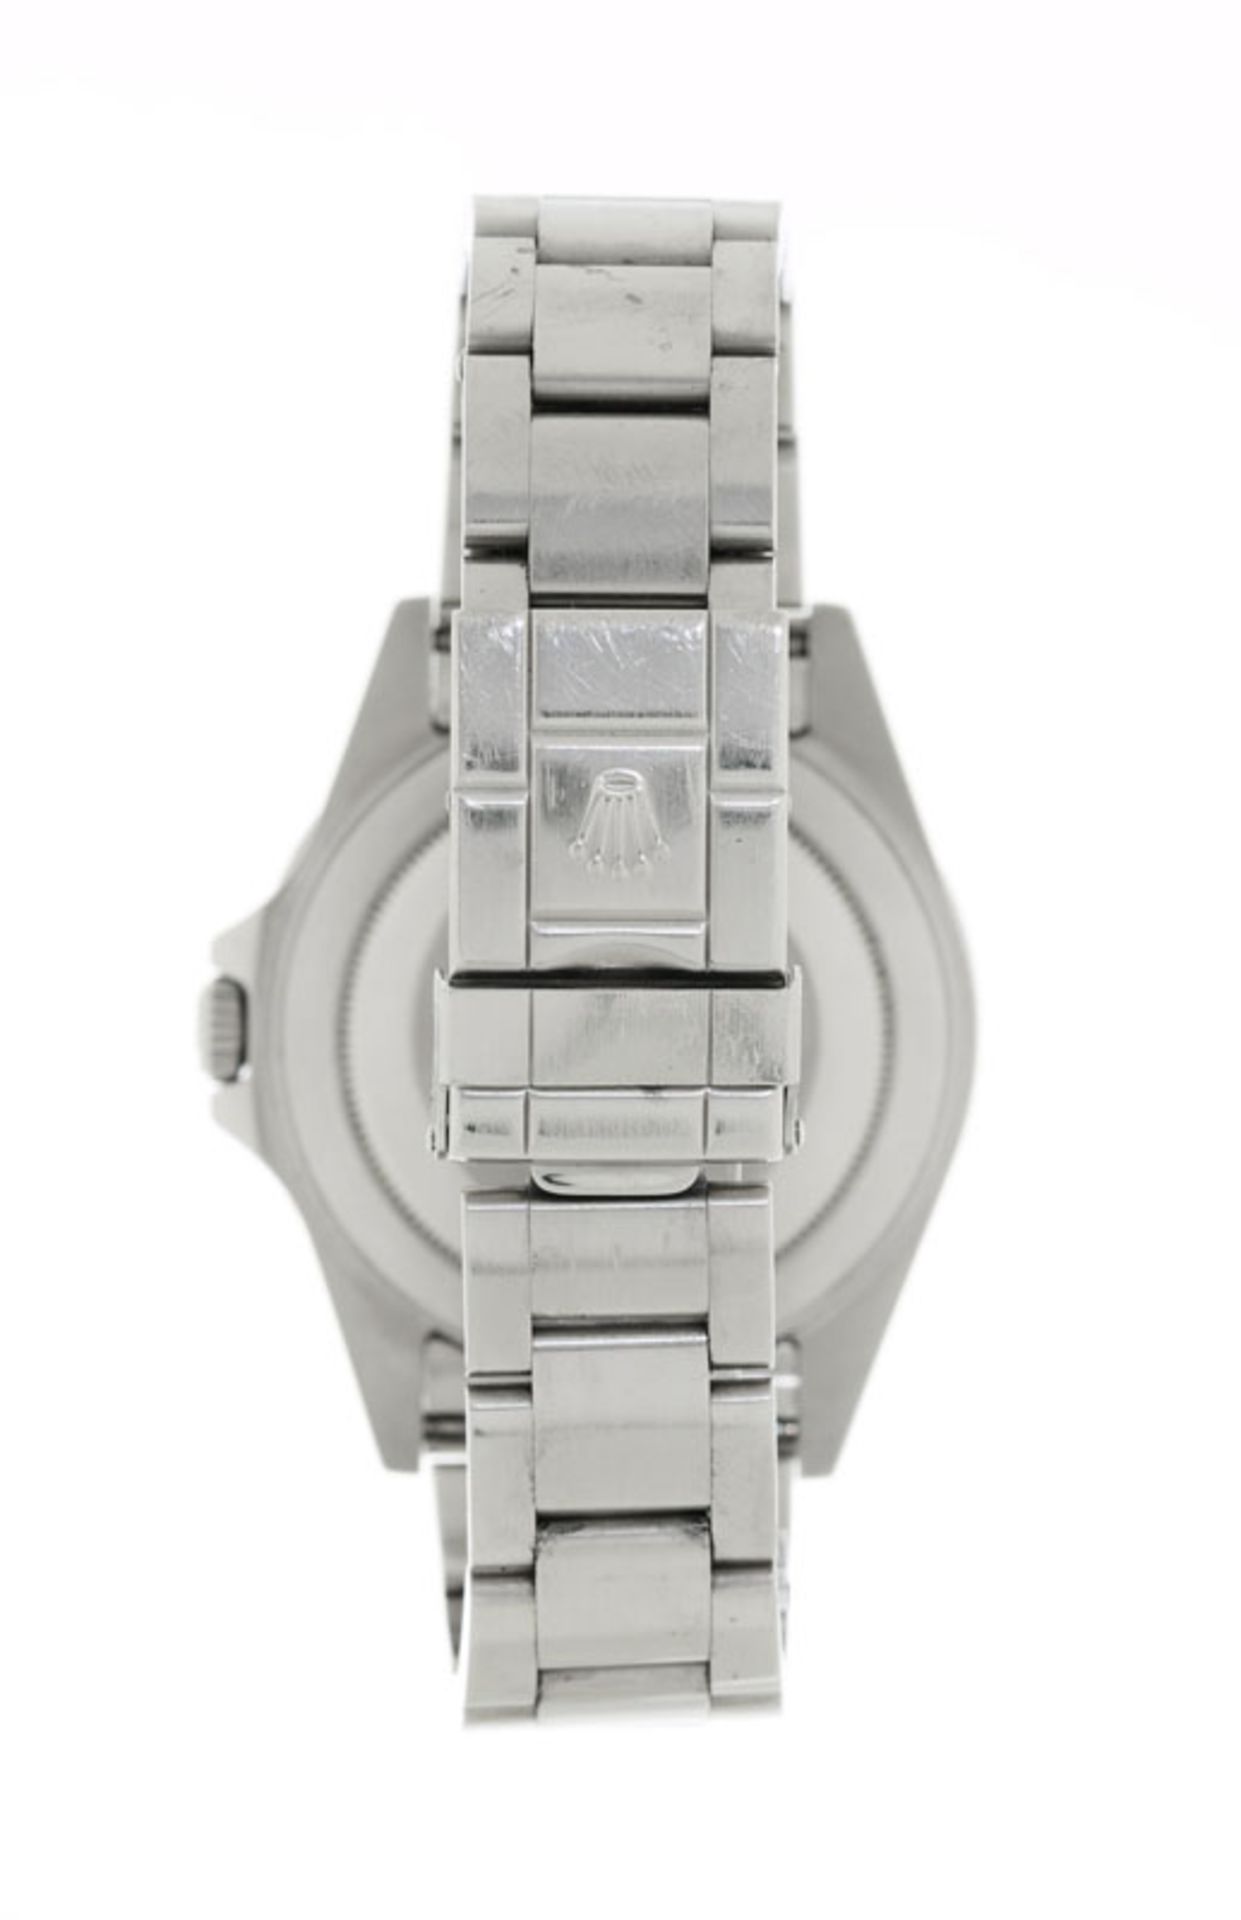 Rolex, GMT Master II, réf. 16710/2180, montre-bracelet en acier avec indication de la date, garantie - Bild 3 aus 5